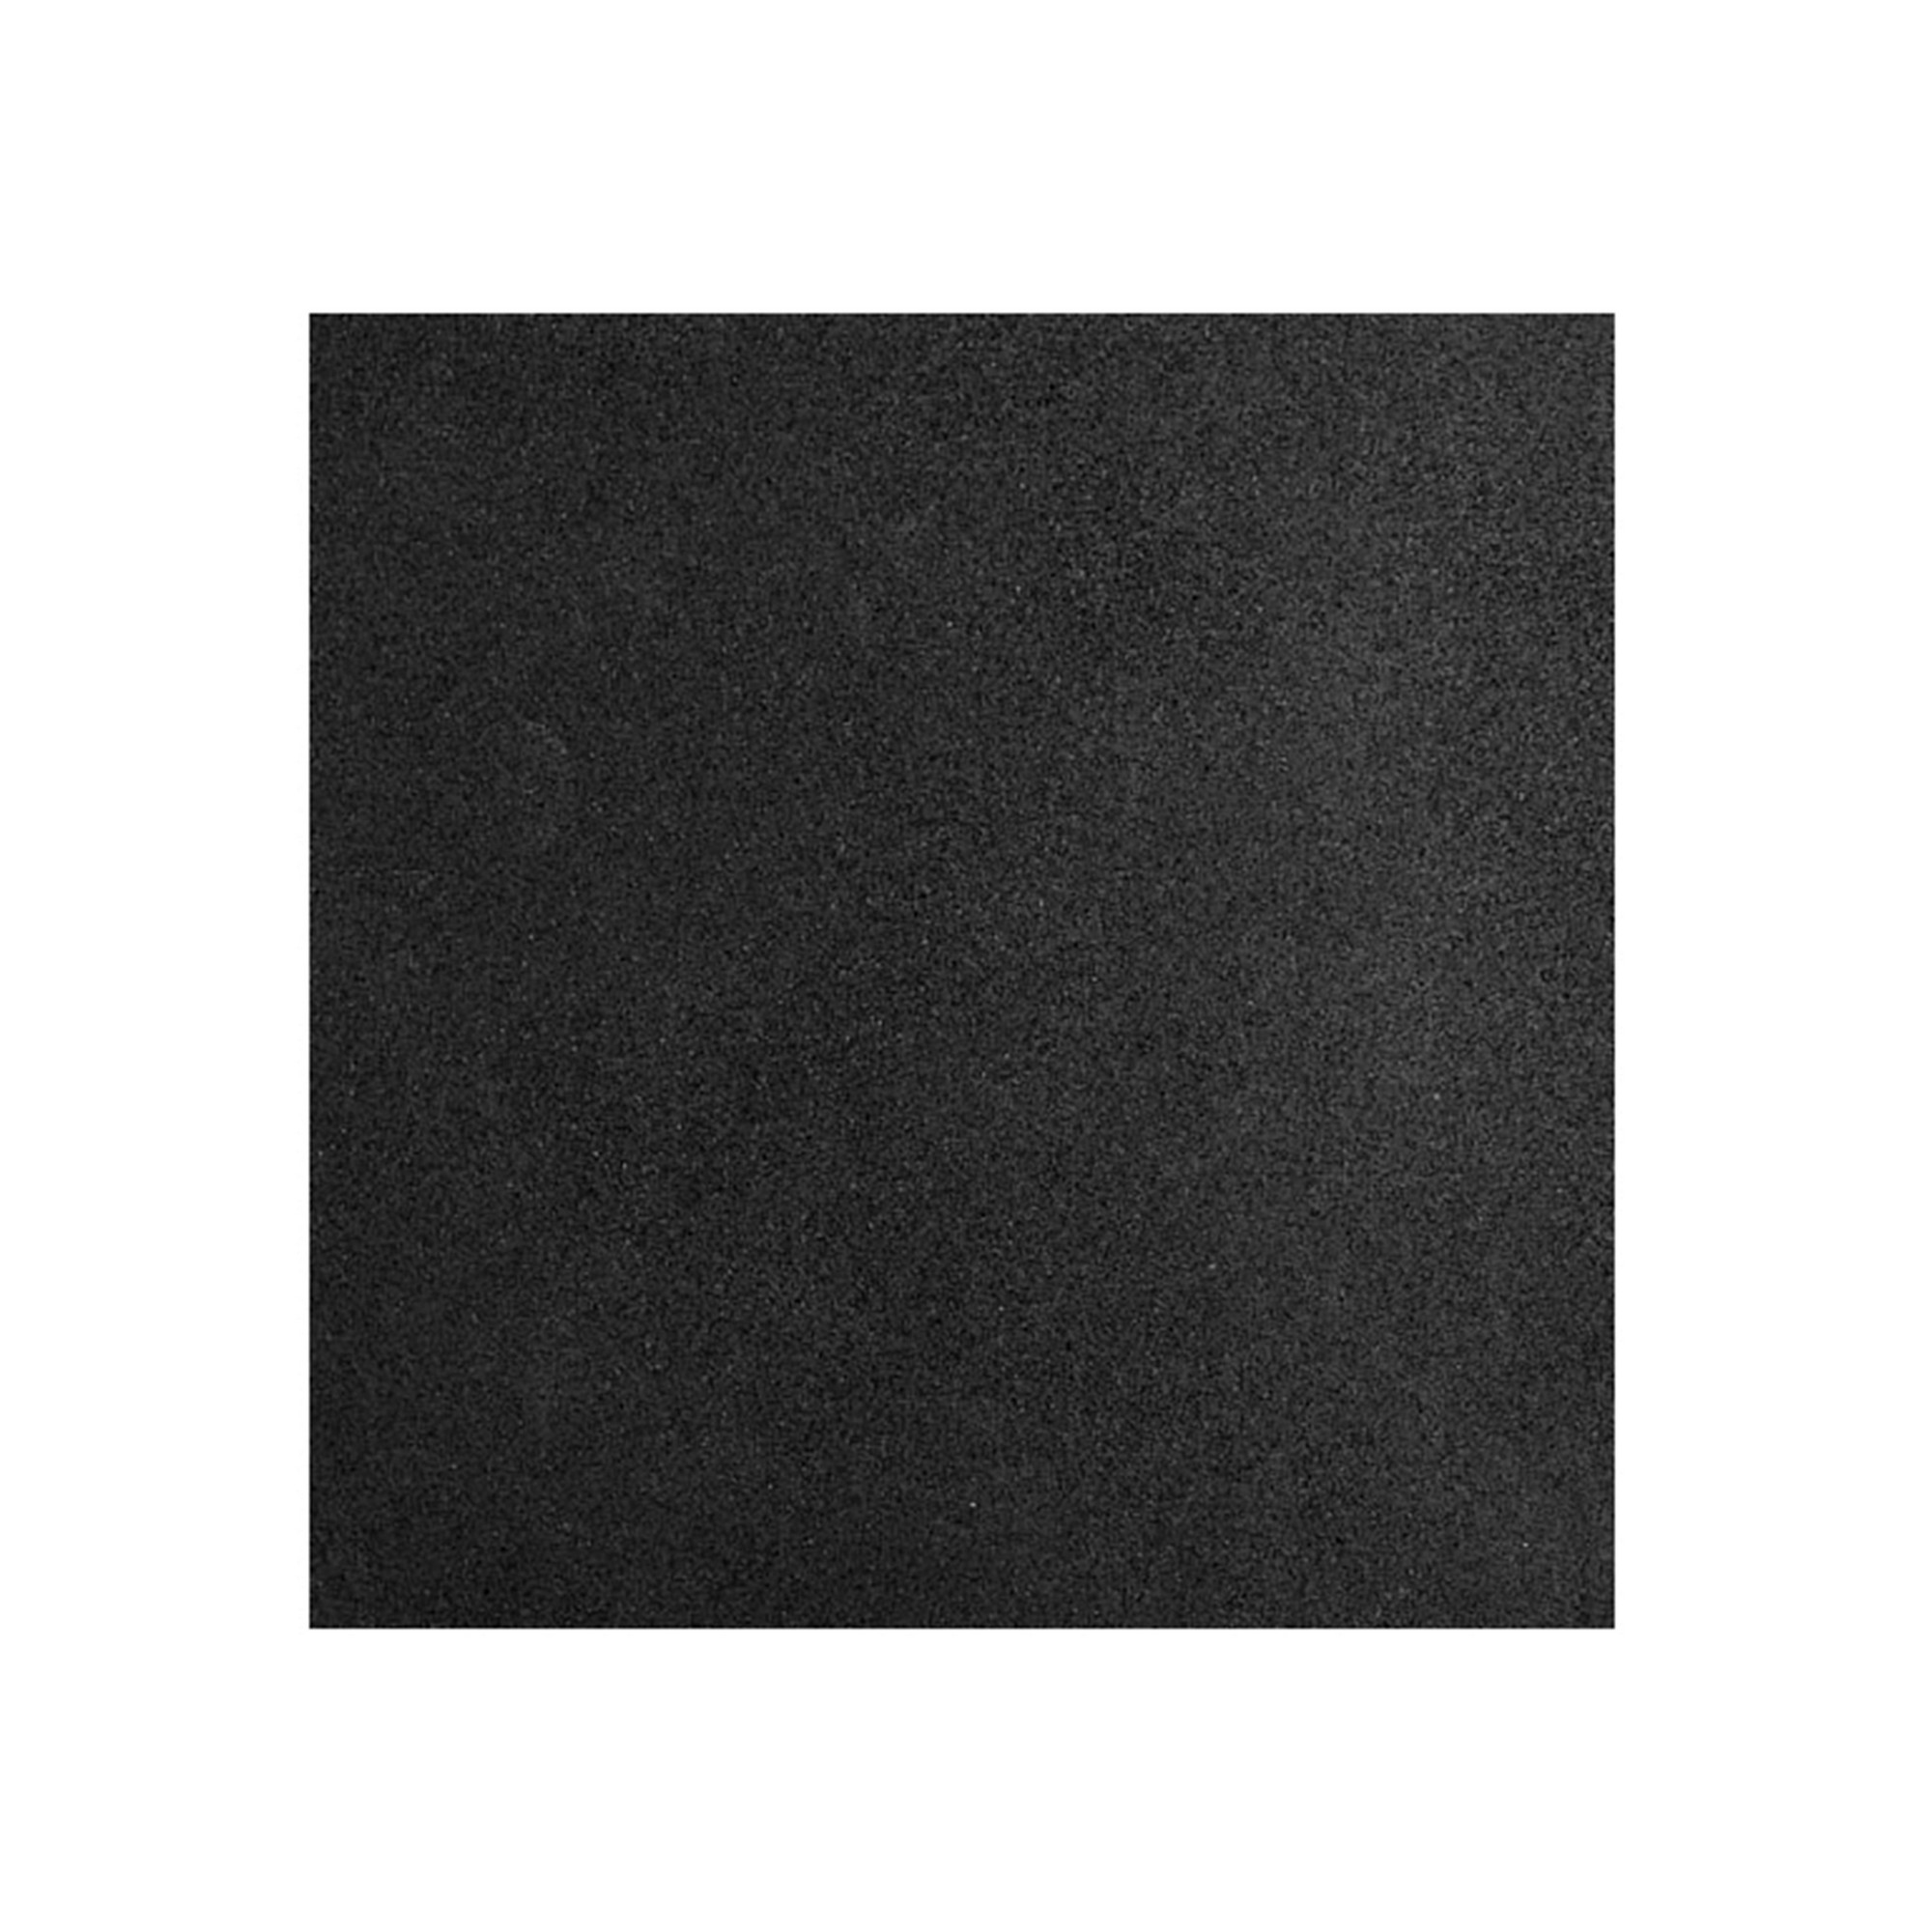 Коврик резиновый Profi-Fit черный,1000x1000x16 мм 2000_2000